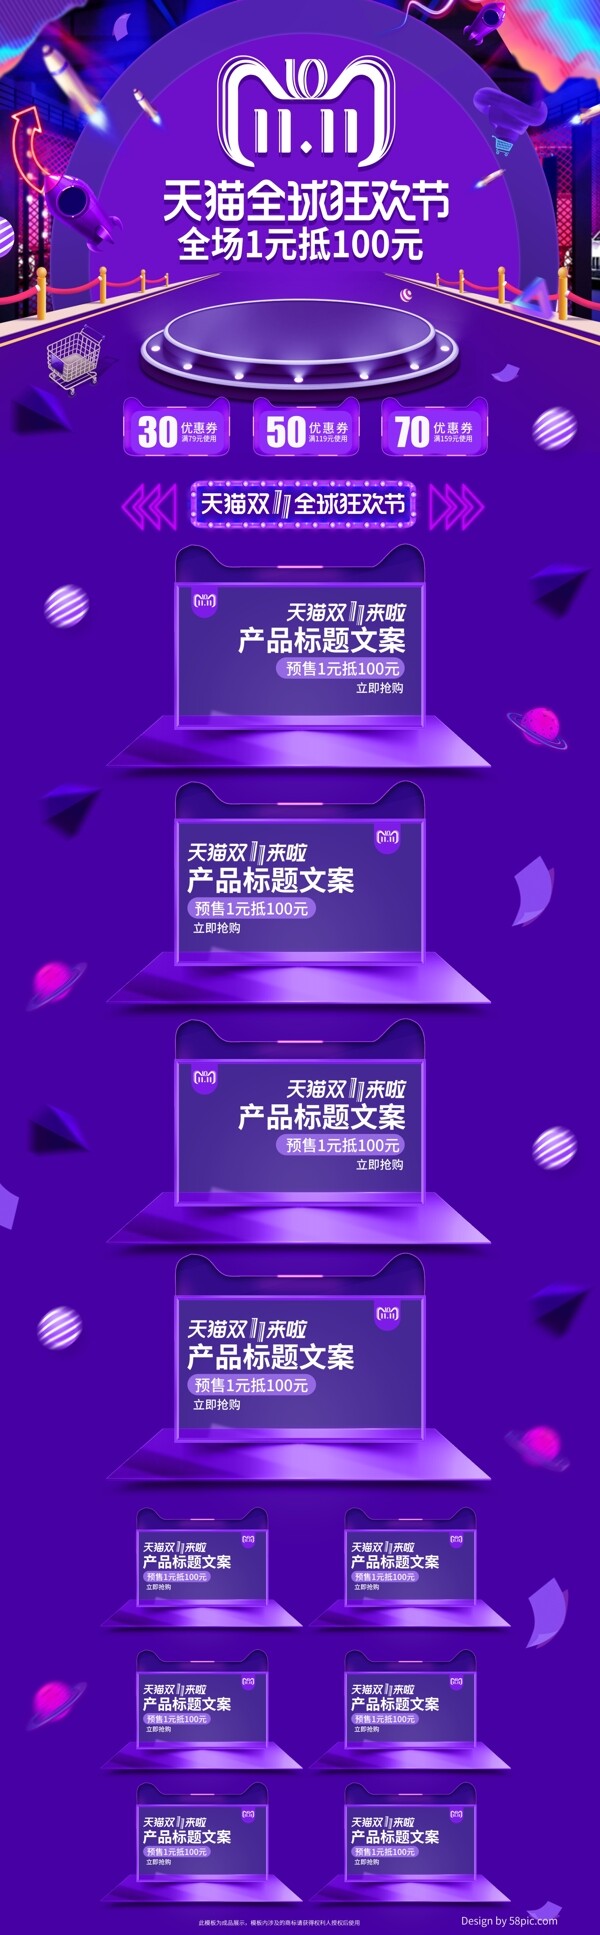 紫色炫酷欧普双十一双11预售促销电商首页